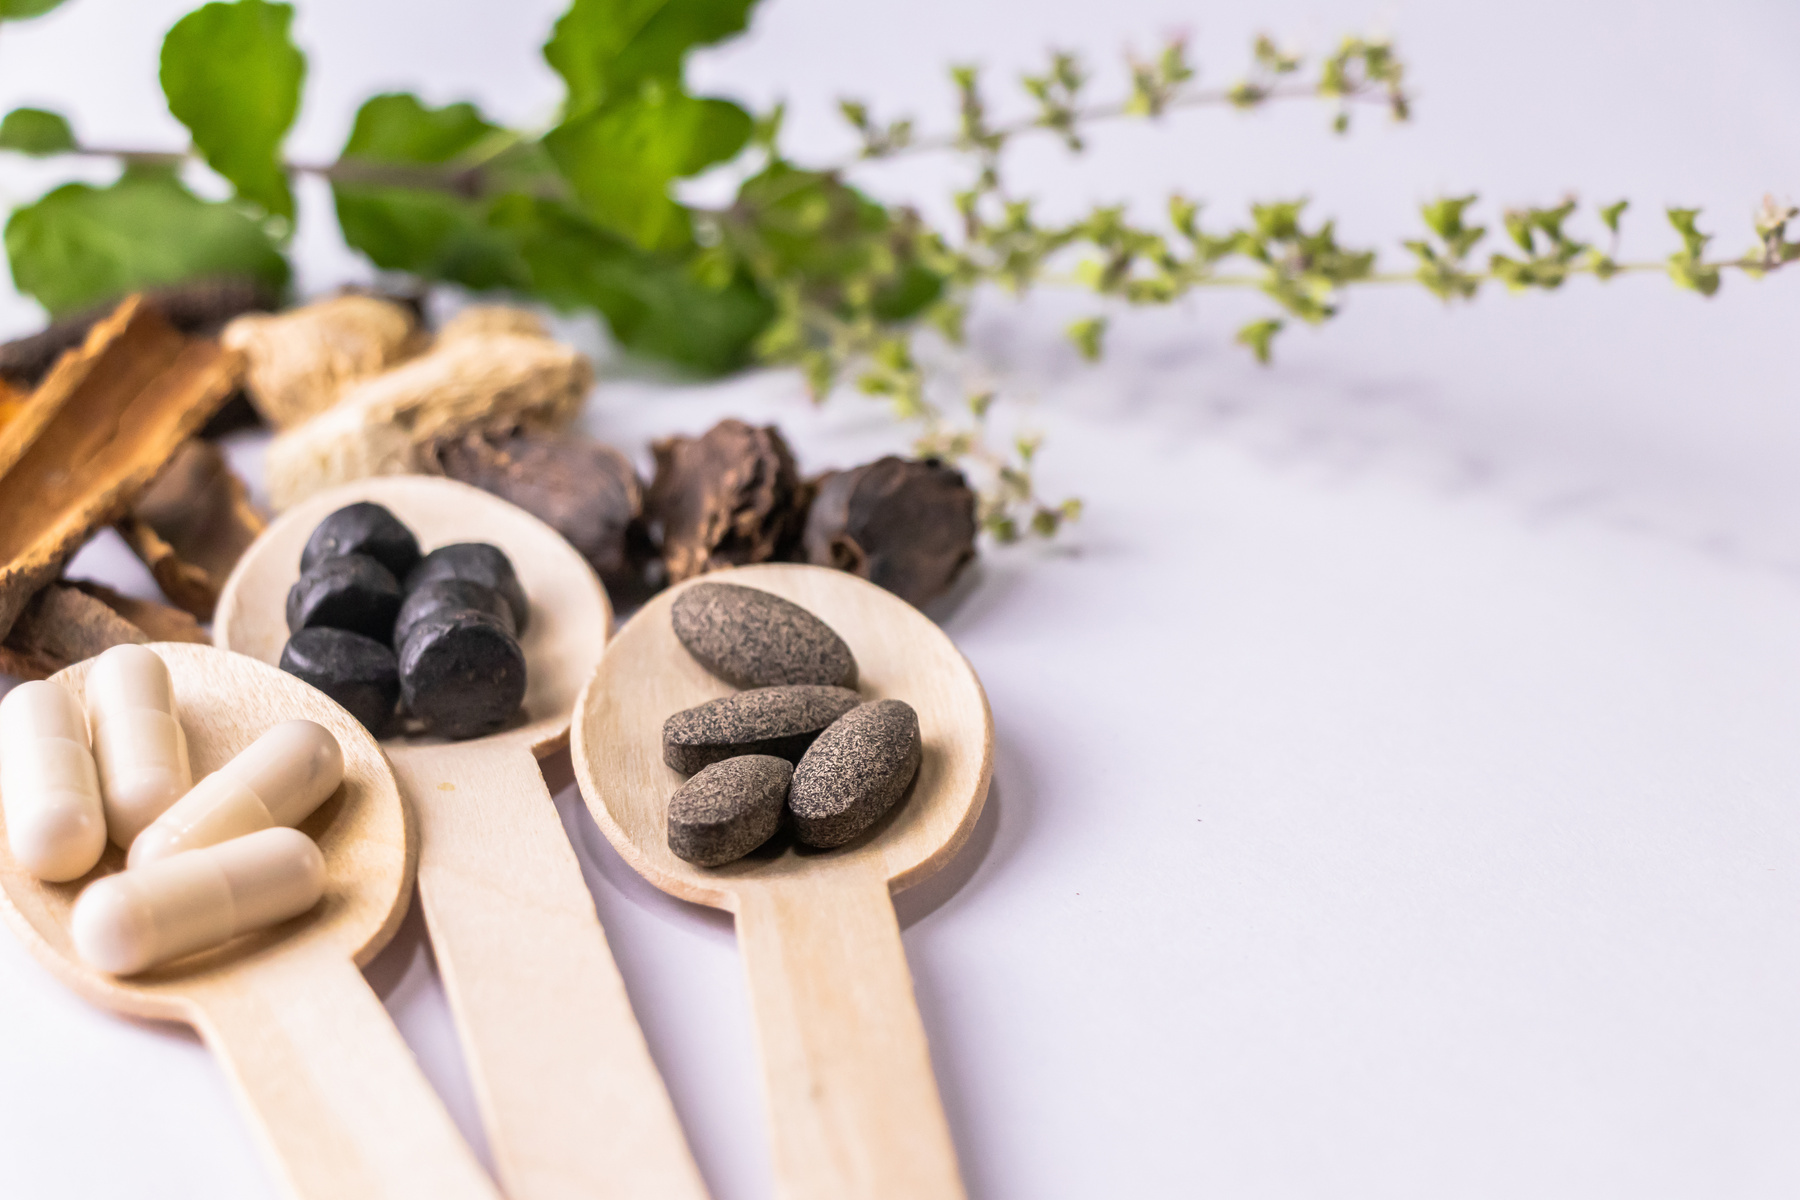 Ayurvedic Medicines in Wooden Spoon 